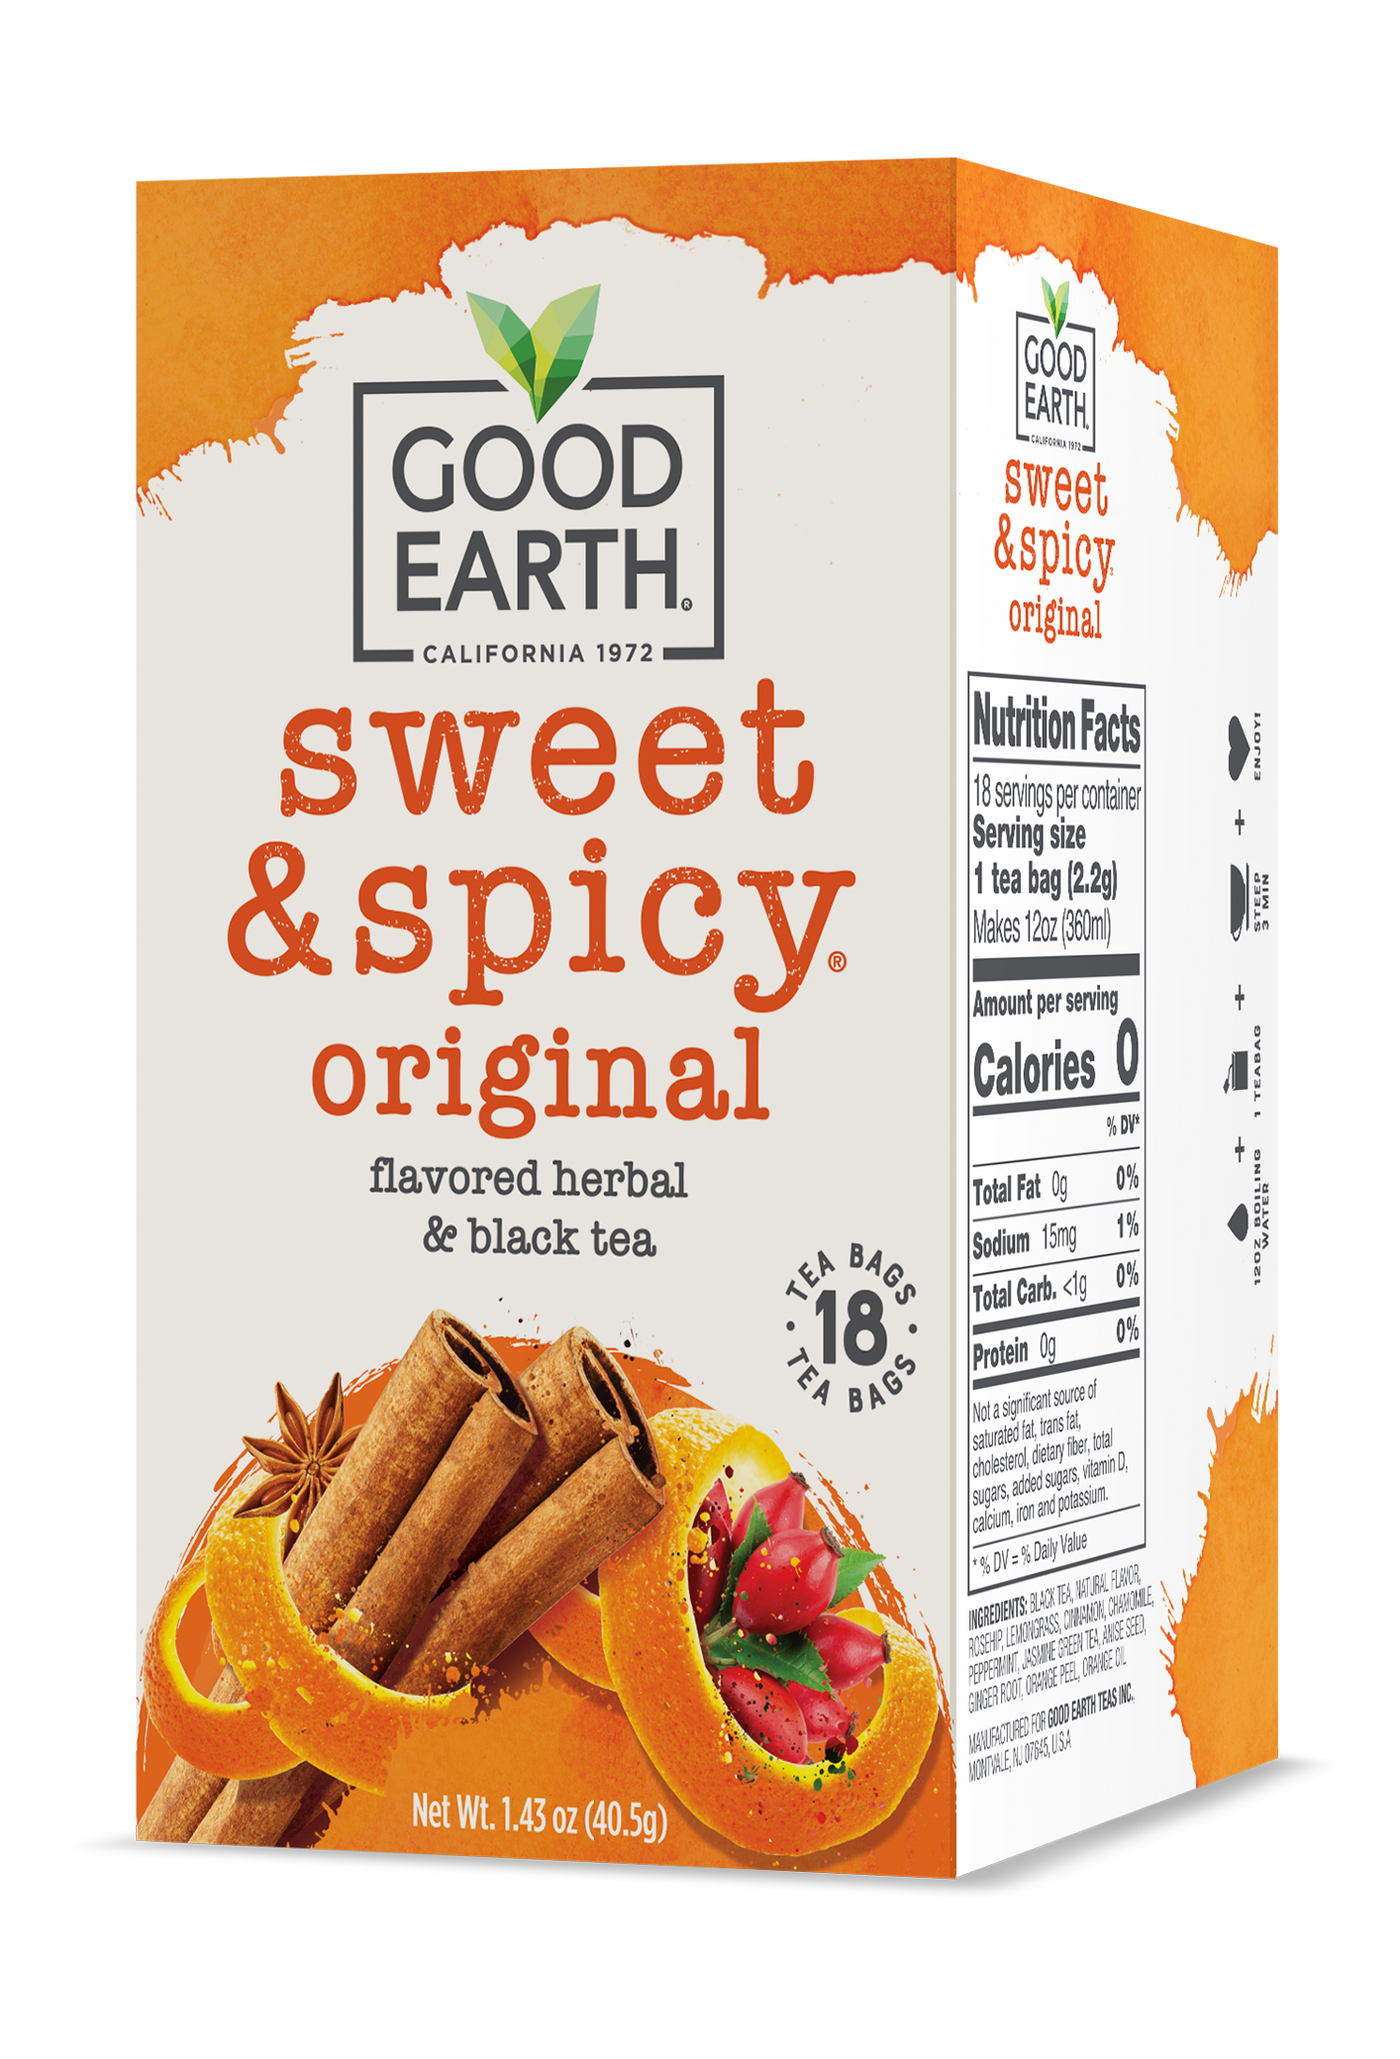 Sweet & Spicy Original packaging